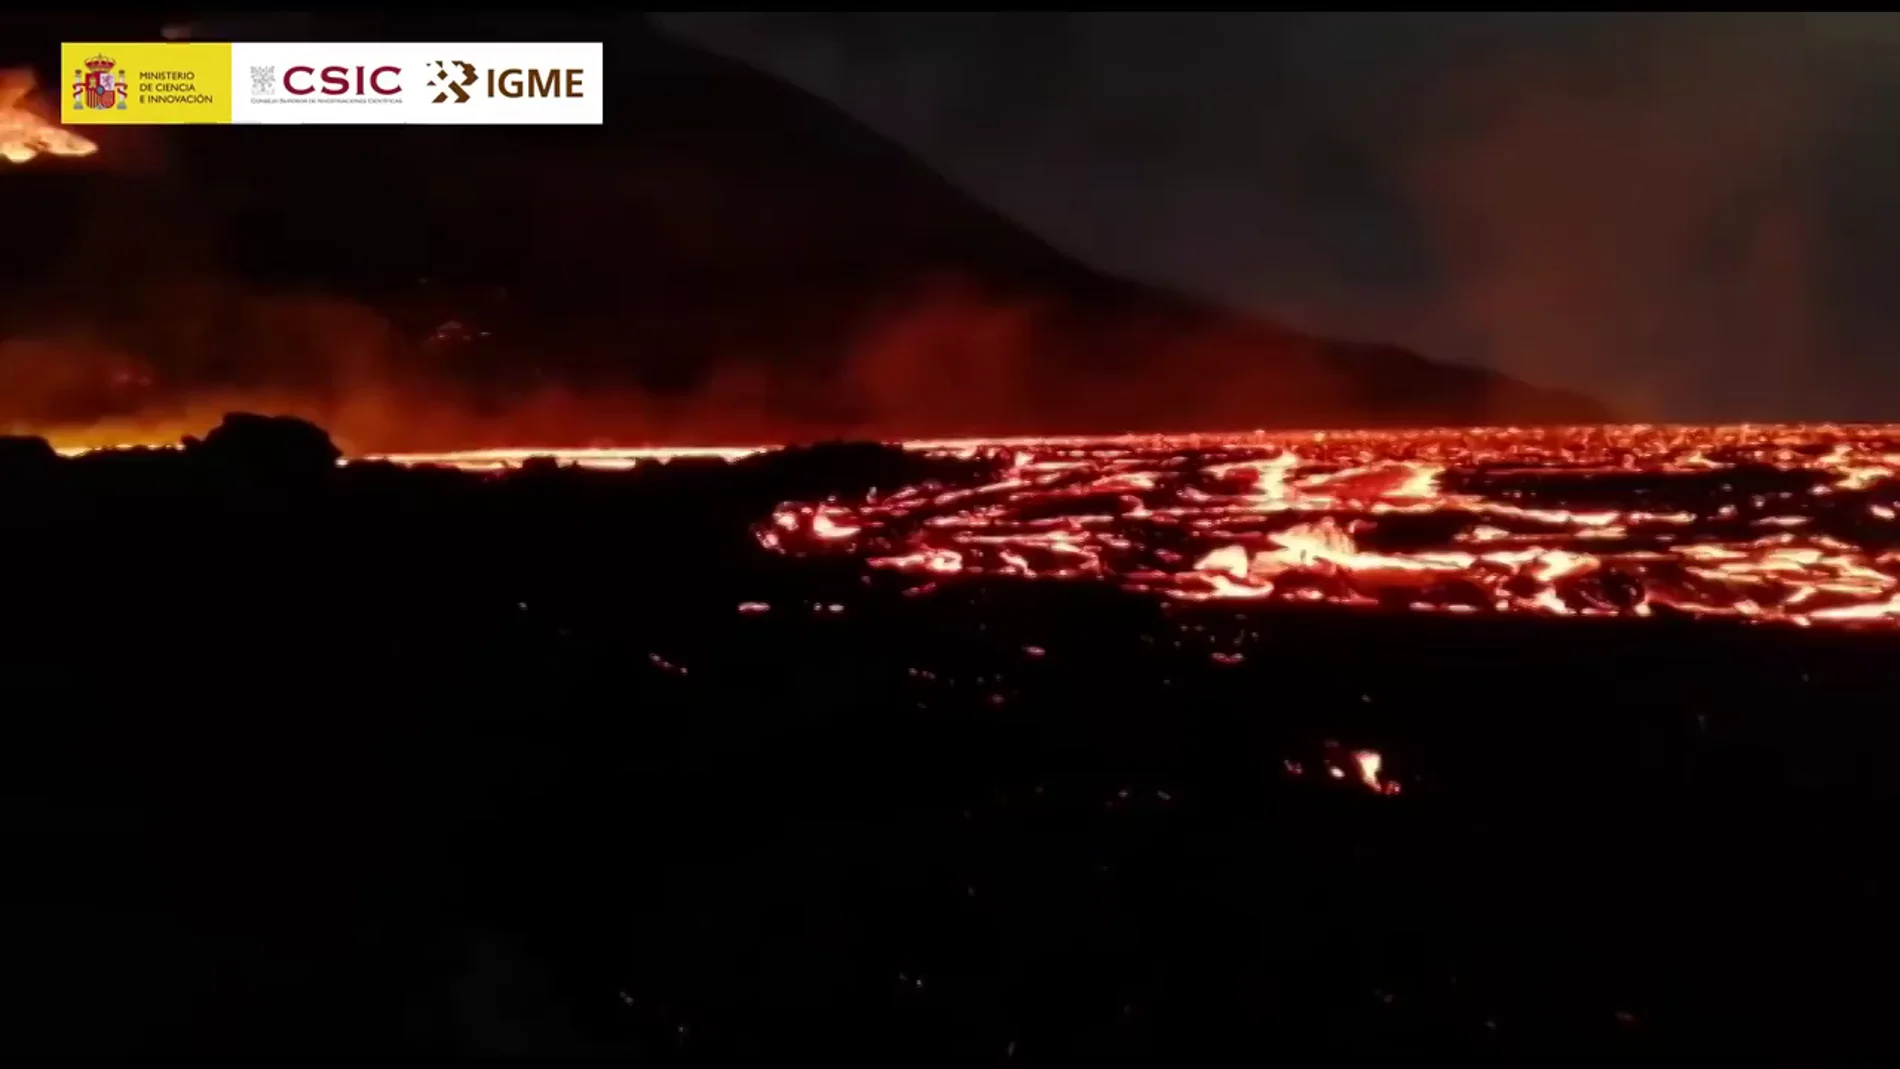 Logran grabar las coladas Pahoehoe y el mar de lava formado en el interior de La Palma